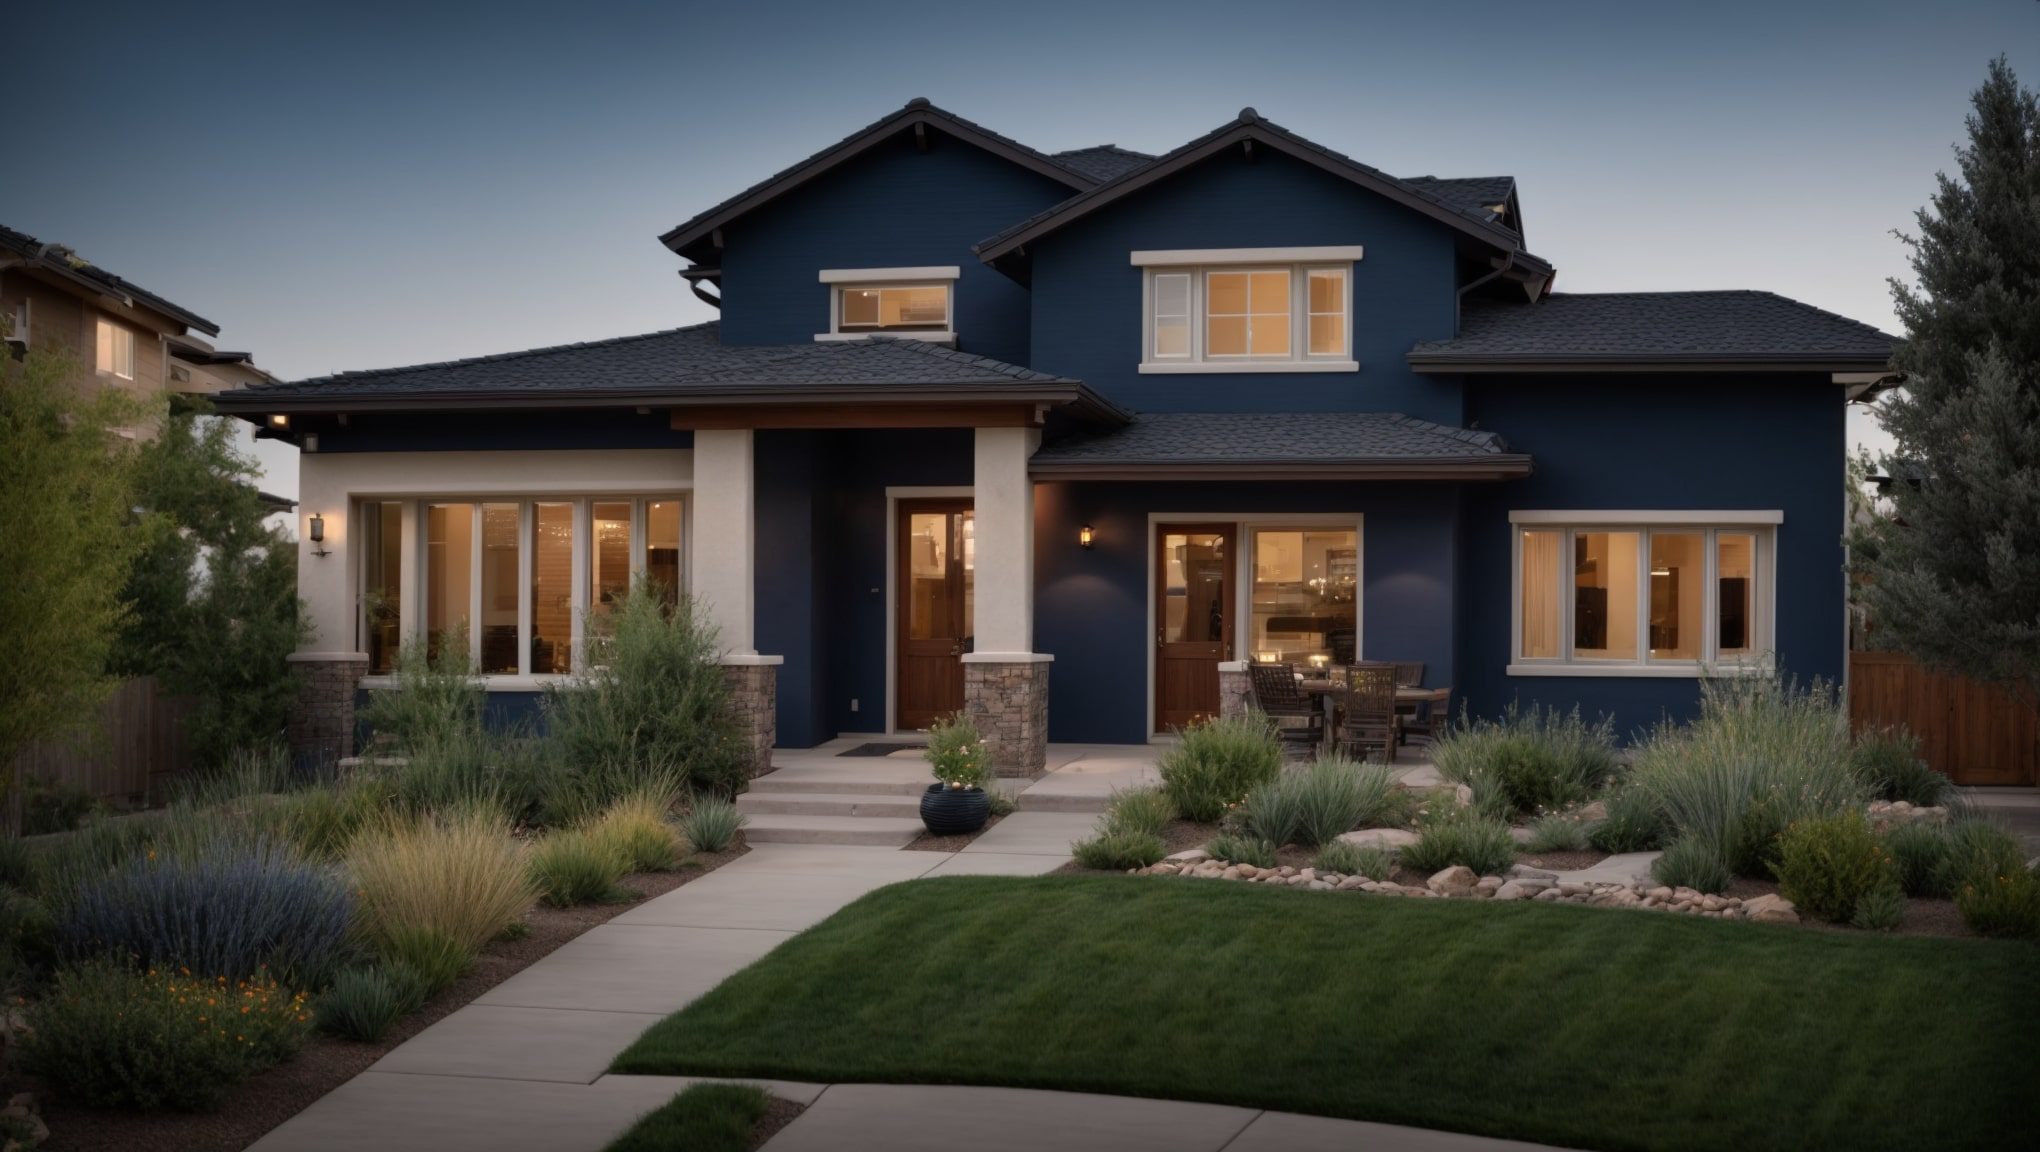 Suburban Ranch Style Home with Stucco Siding - Siding Colorado in Colorado Springs